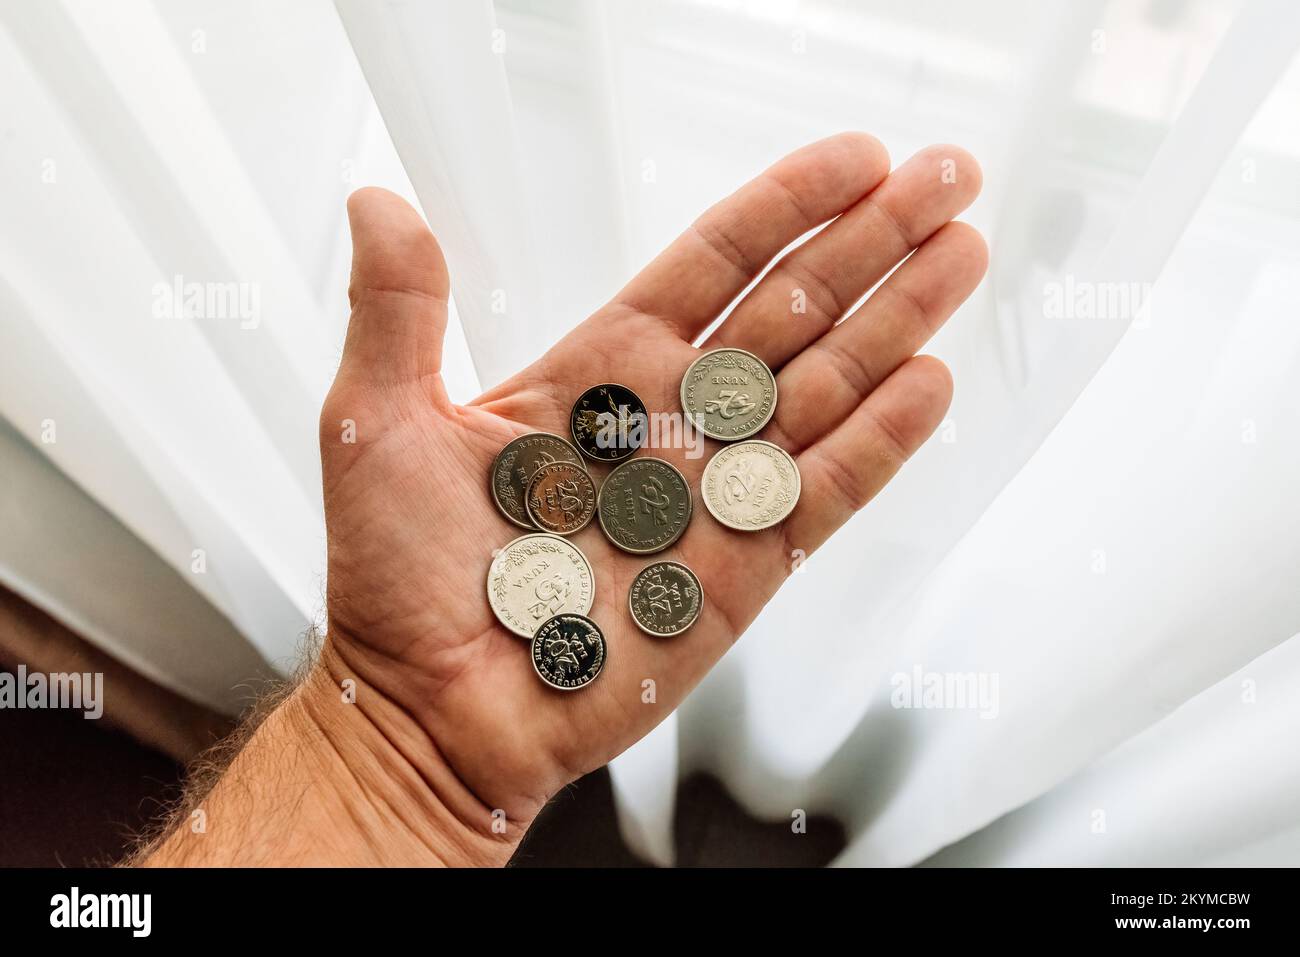 Lovran, Croacia - 12 de septiembre de 2022: Hombre con monedas croatas Kuna y Lipa en la mano. Kuna es la moneda en Croacia utilizada desde 1194 y estará en uso Foto de stock